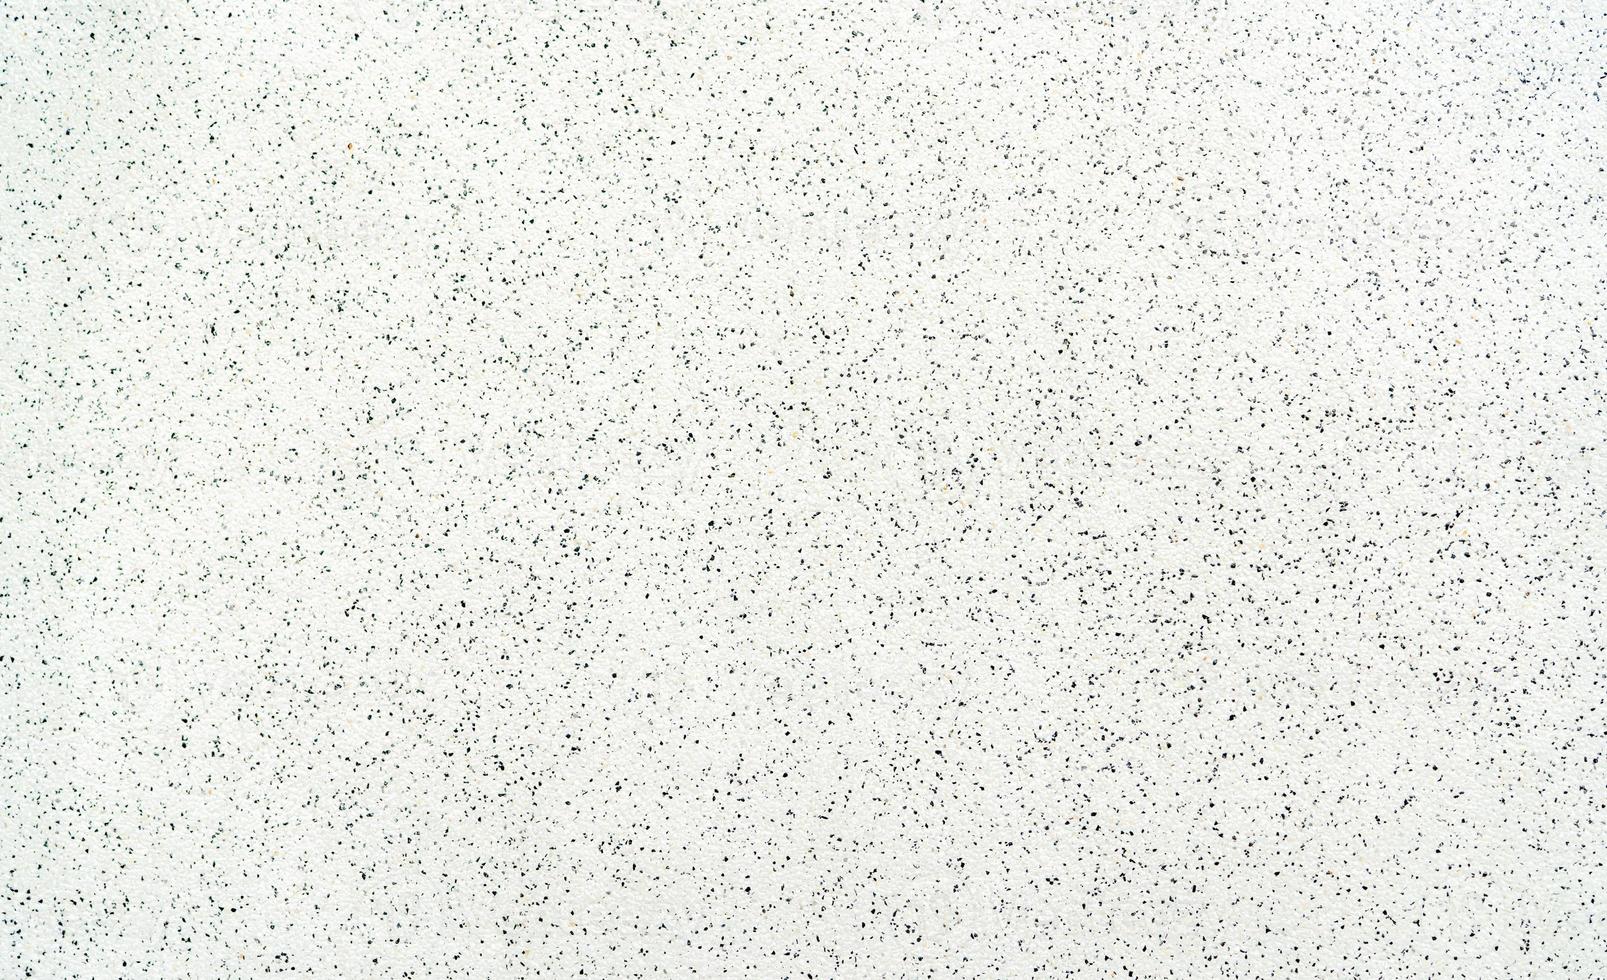 zwart-wit patroon van terrazzo vloer textuur achtergrond. terrazzovloeren. terrazzo vloer naadloos patroon. muur bestaat uit chips van marmer, kwarts, graniet met een cementgebonden bindmiddel. foto